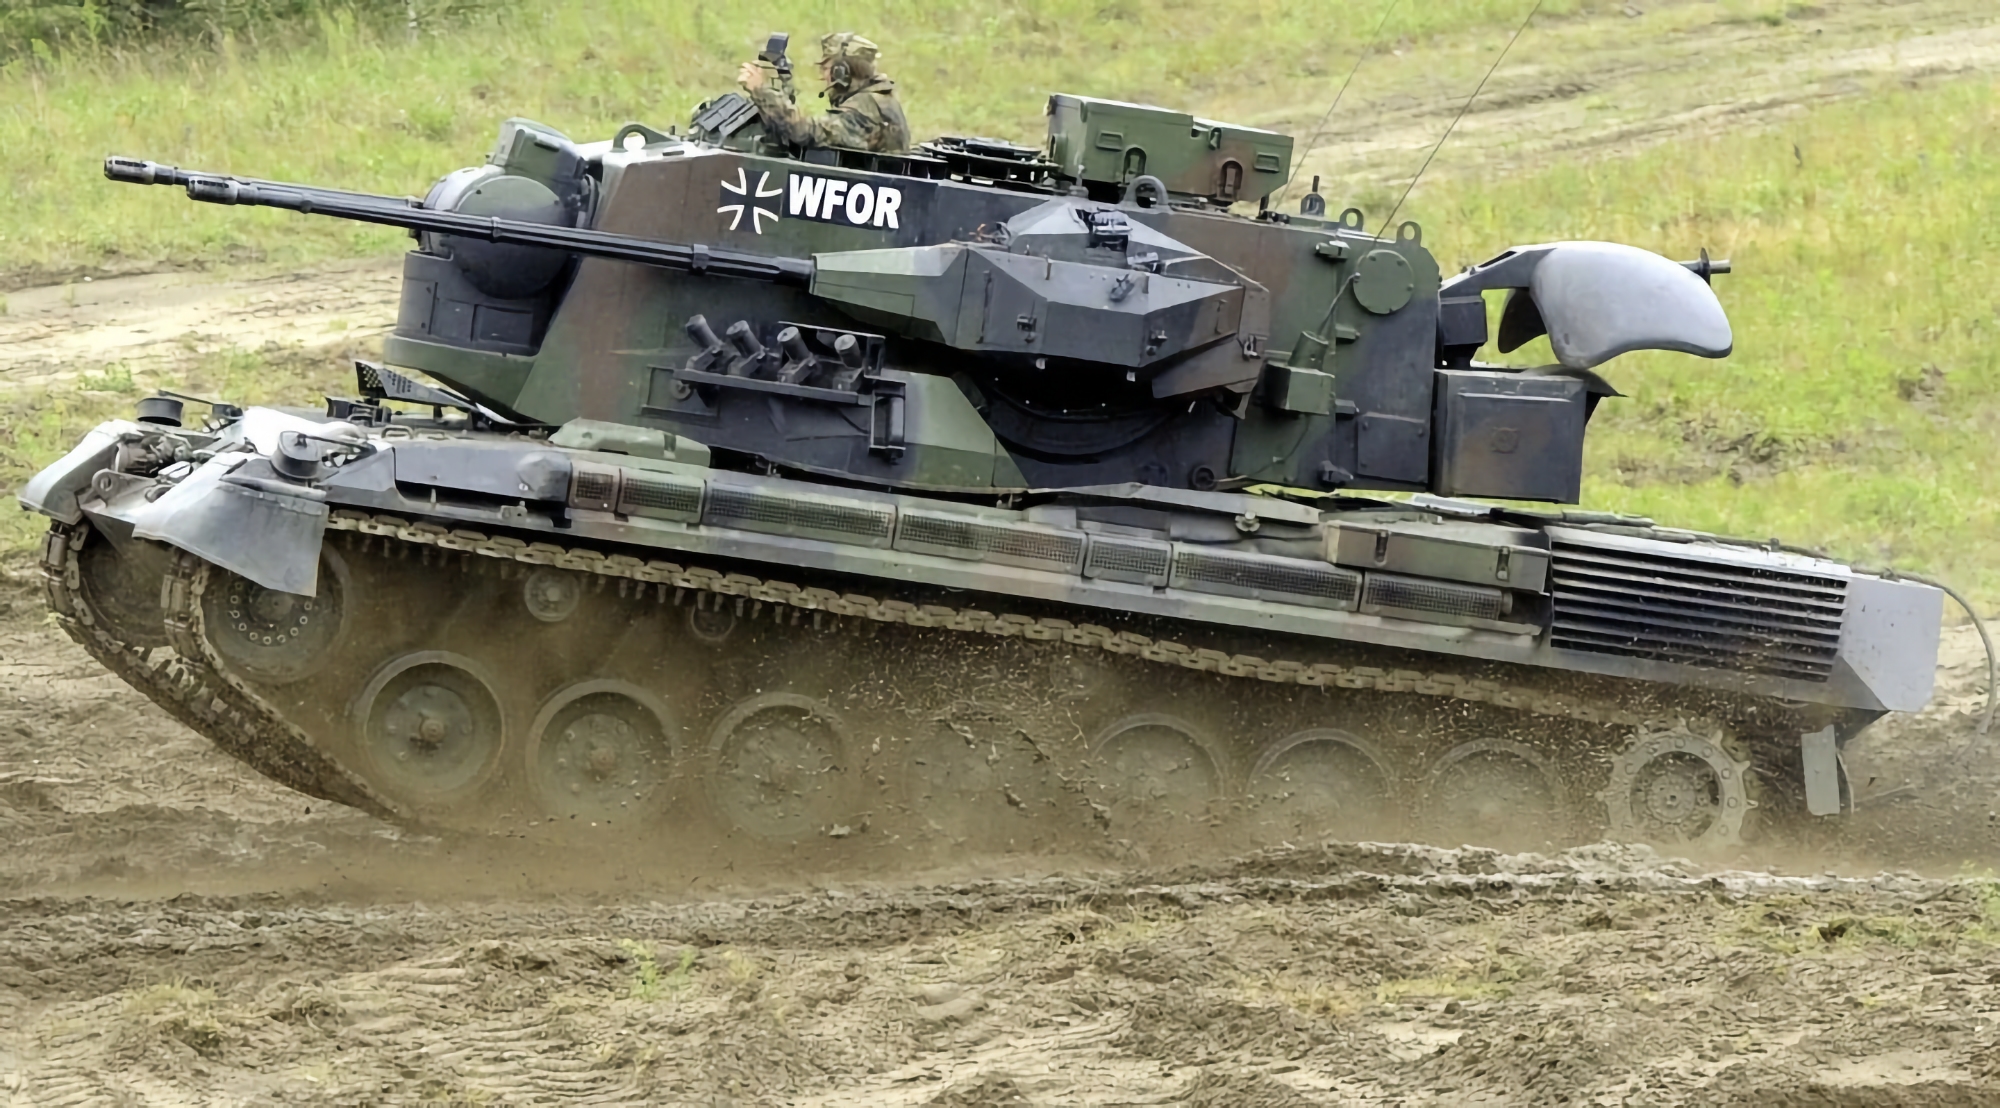 Sistemi di difesa aerea semoventi Gepard, munizioni per carri armati Leopard 2A6 e UAV: La Germania consegna all'Ucraina un nuovo pacchetto di armi